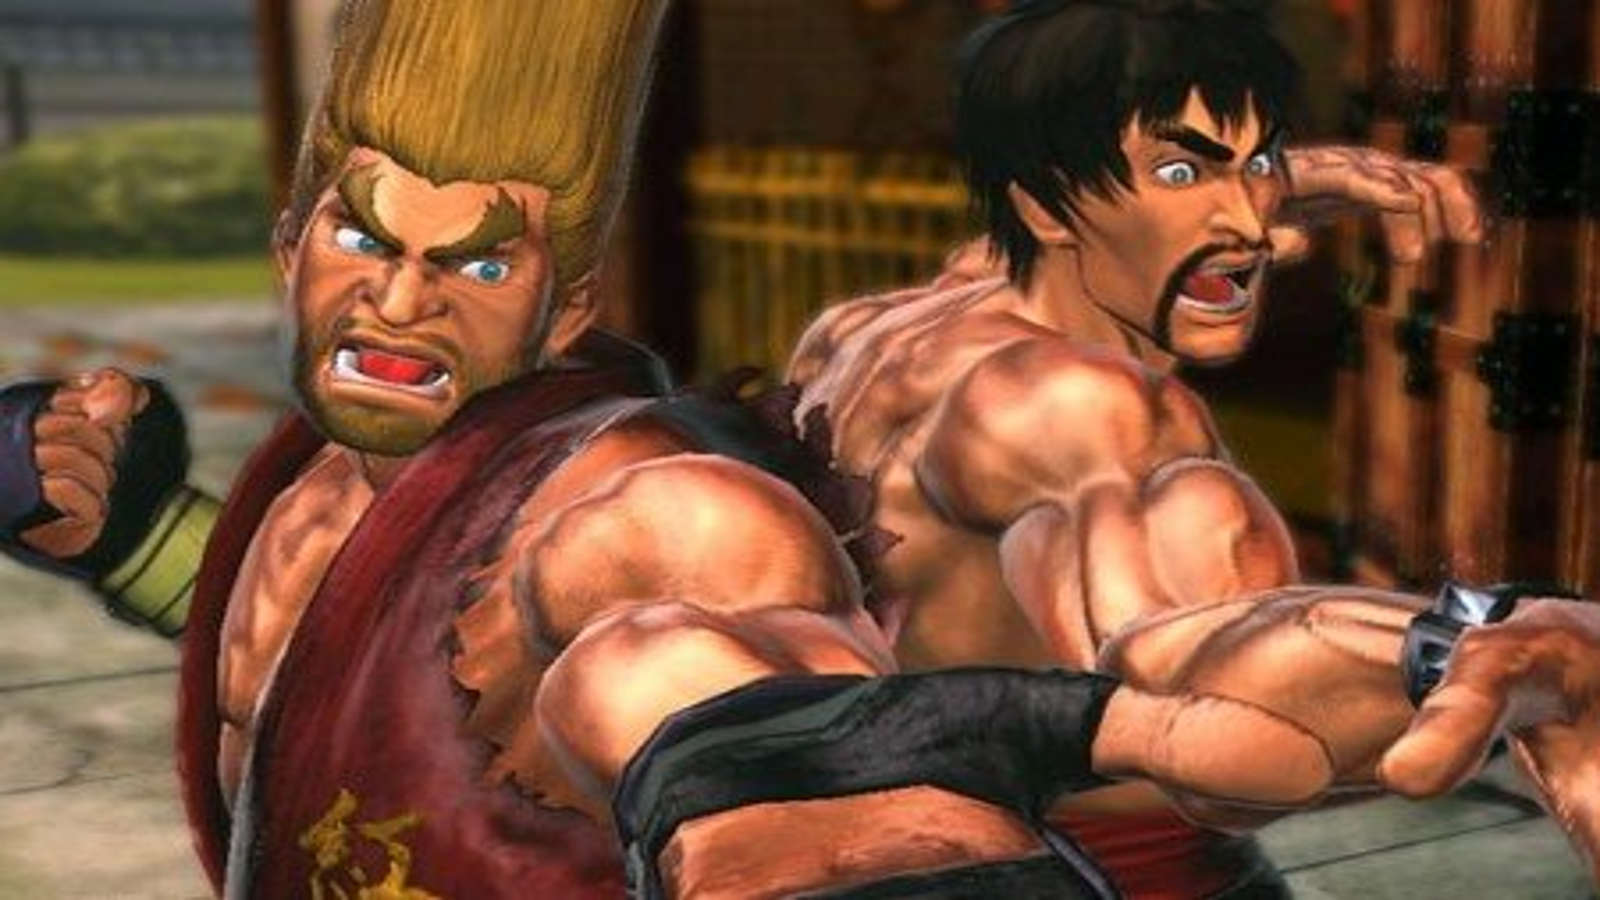 Tekken X Street Fighter Has Officially Been Canceled